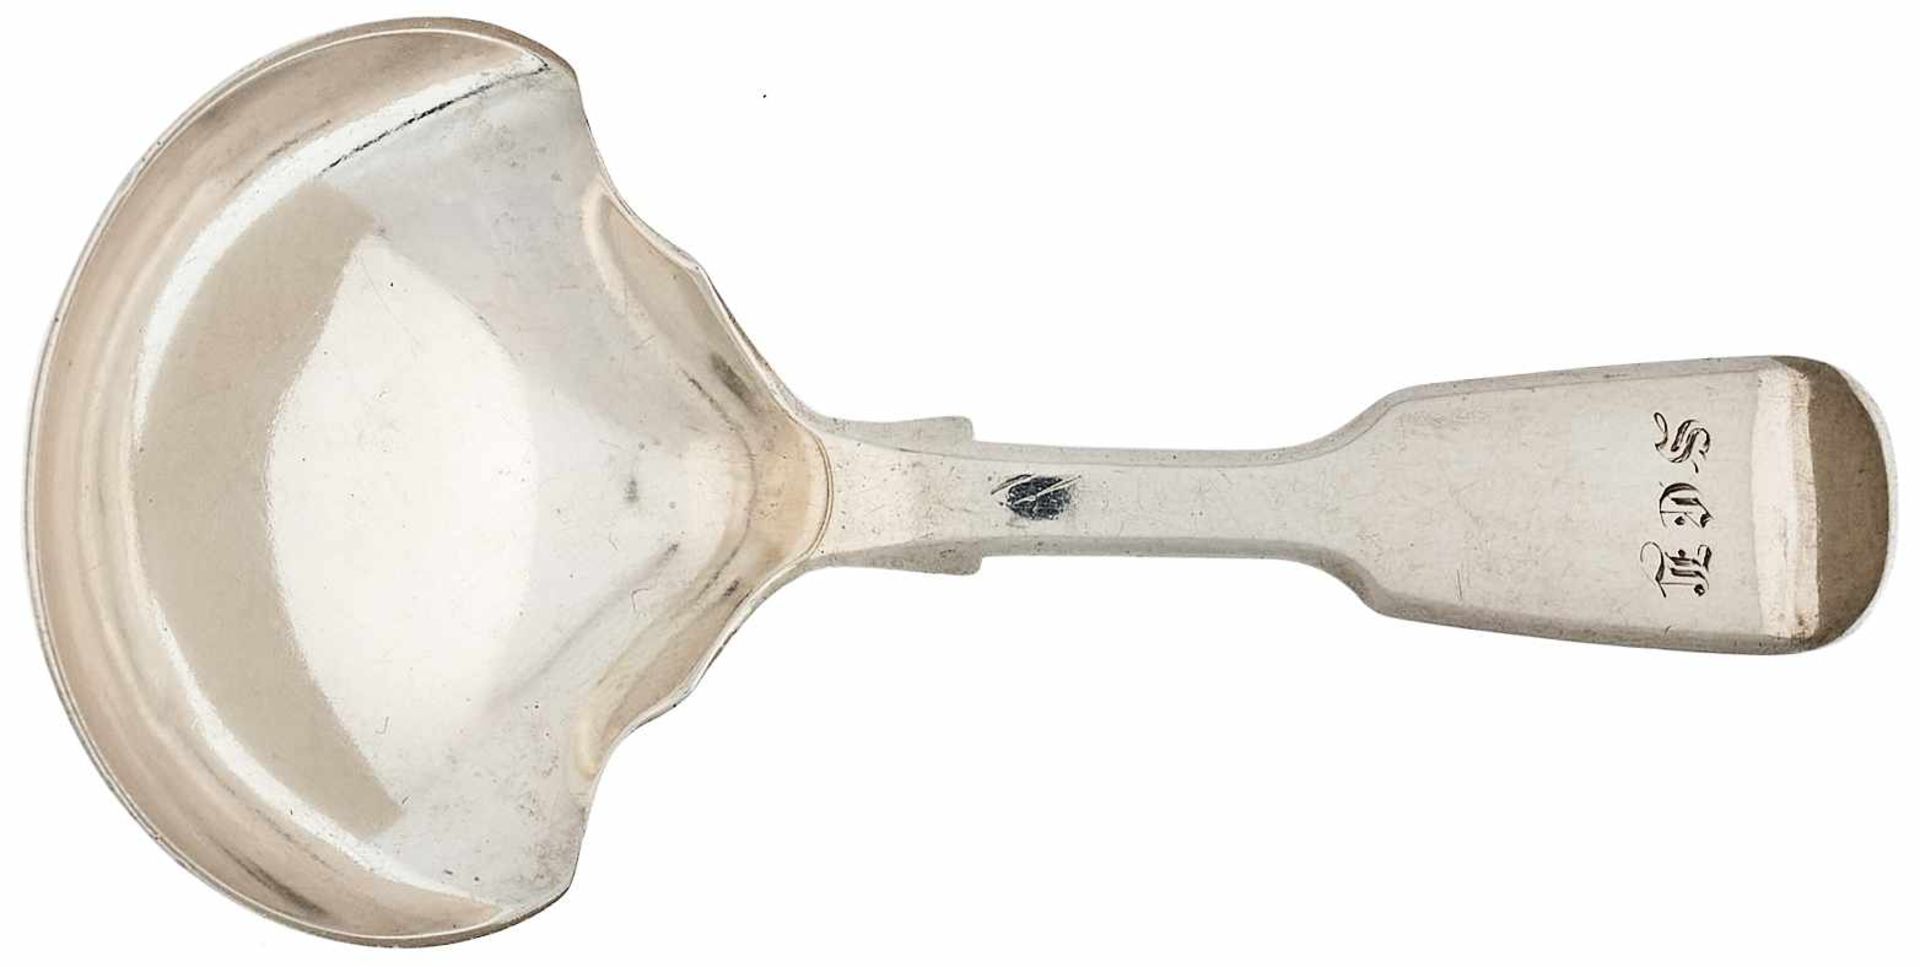 Silberbesteck Vorlegelöffel aus Silber mit Monogramm "E D S". Wohl Beerenlöffel. Sterling